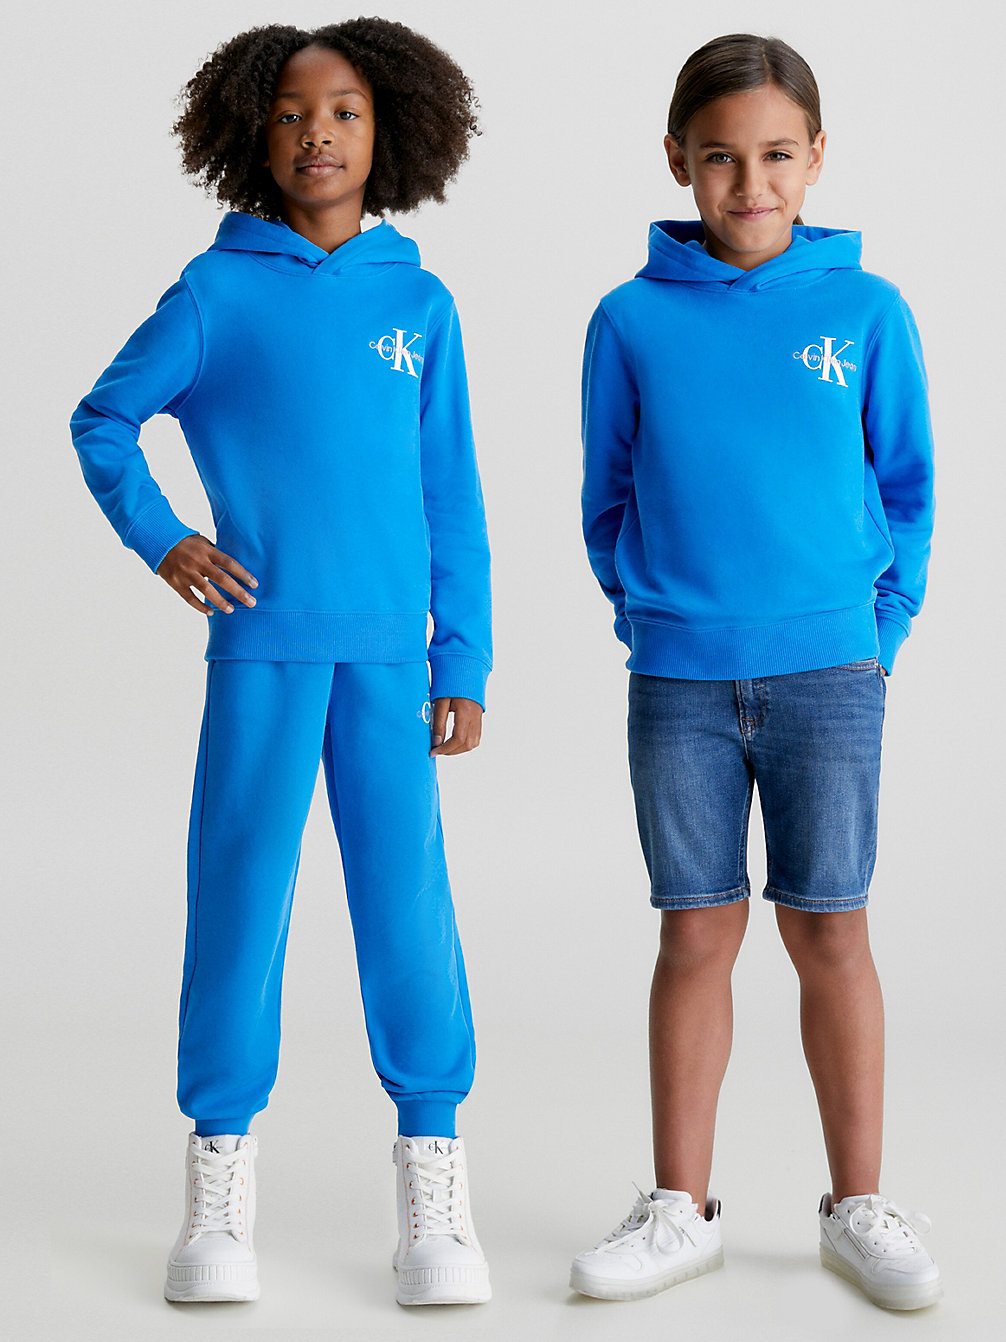 CORRIB RIVER BLUE Sweat-Shirt À Capuche En Coton Bio Pour Enfant undefined kids unisex Calvin Klein